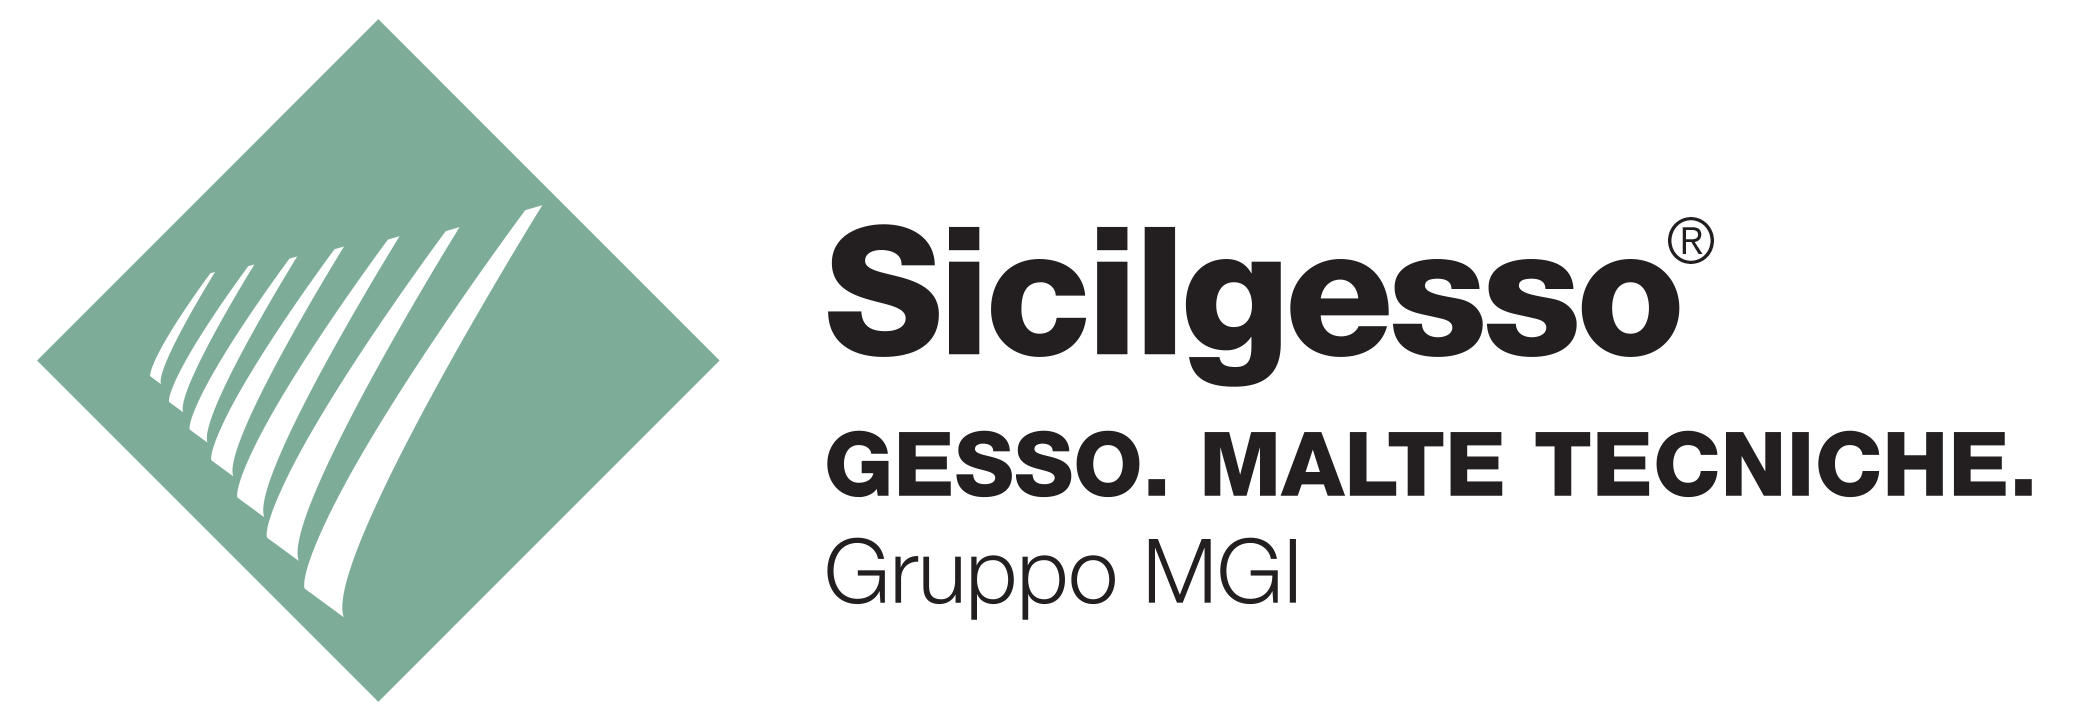 Sicilgesso-logo-ITA